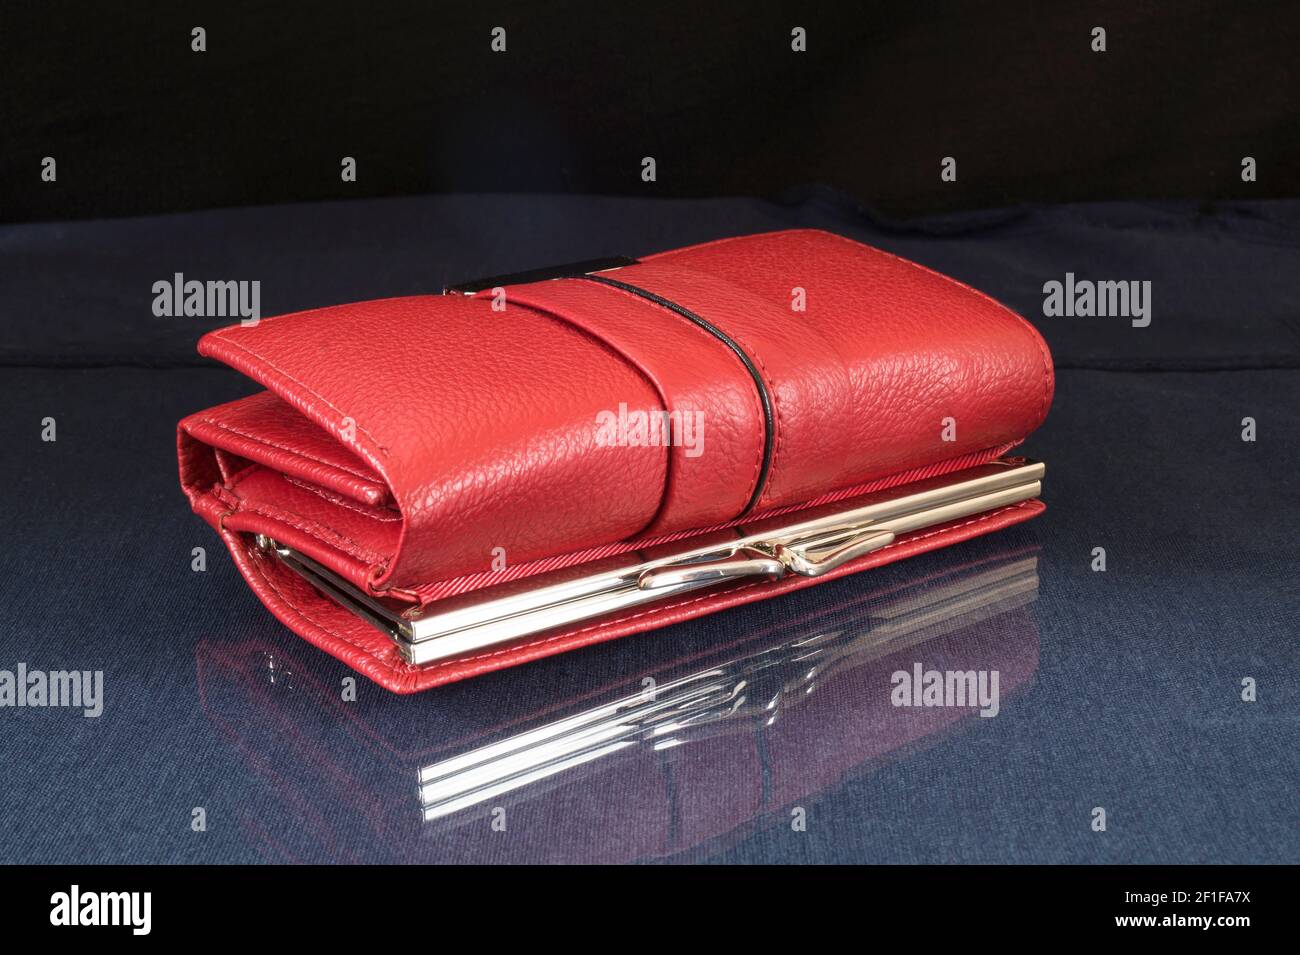 Die rote Brieftasche liegt mit der Reflexion auf dem Tisch. Objekte auf schwarzem Hintergrund Stockfoto